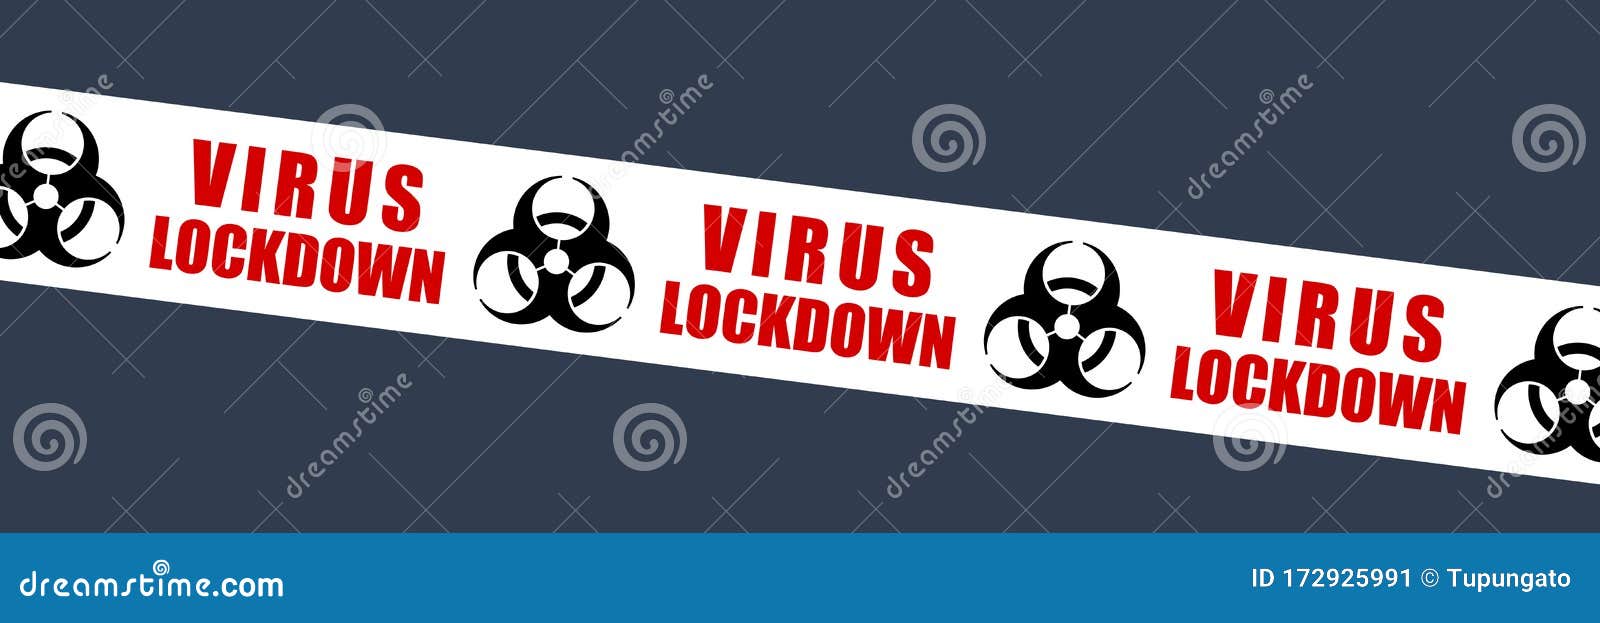 virus lockdown sign